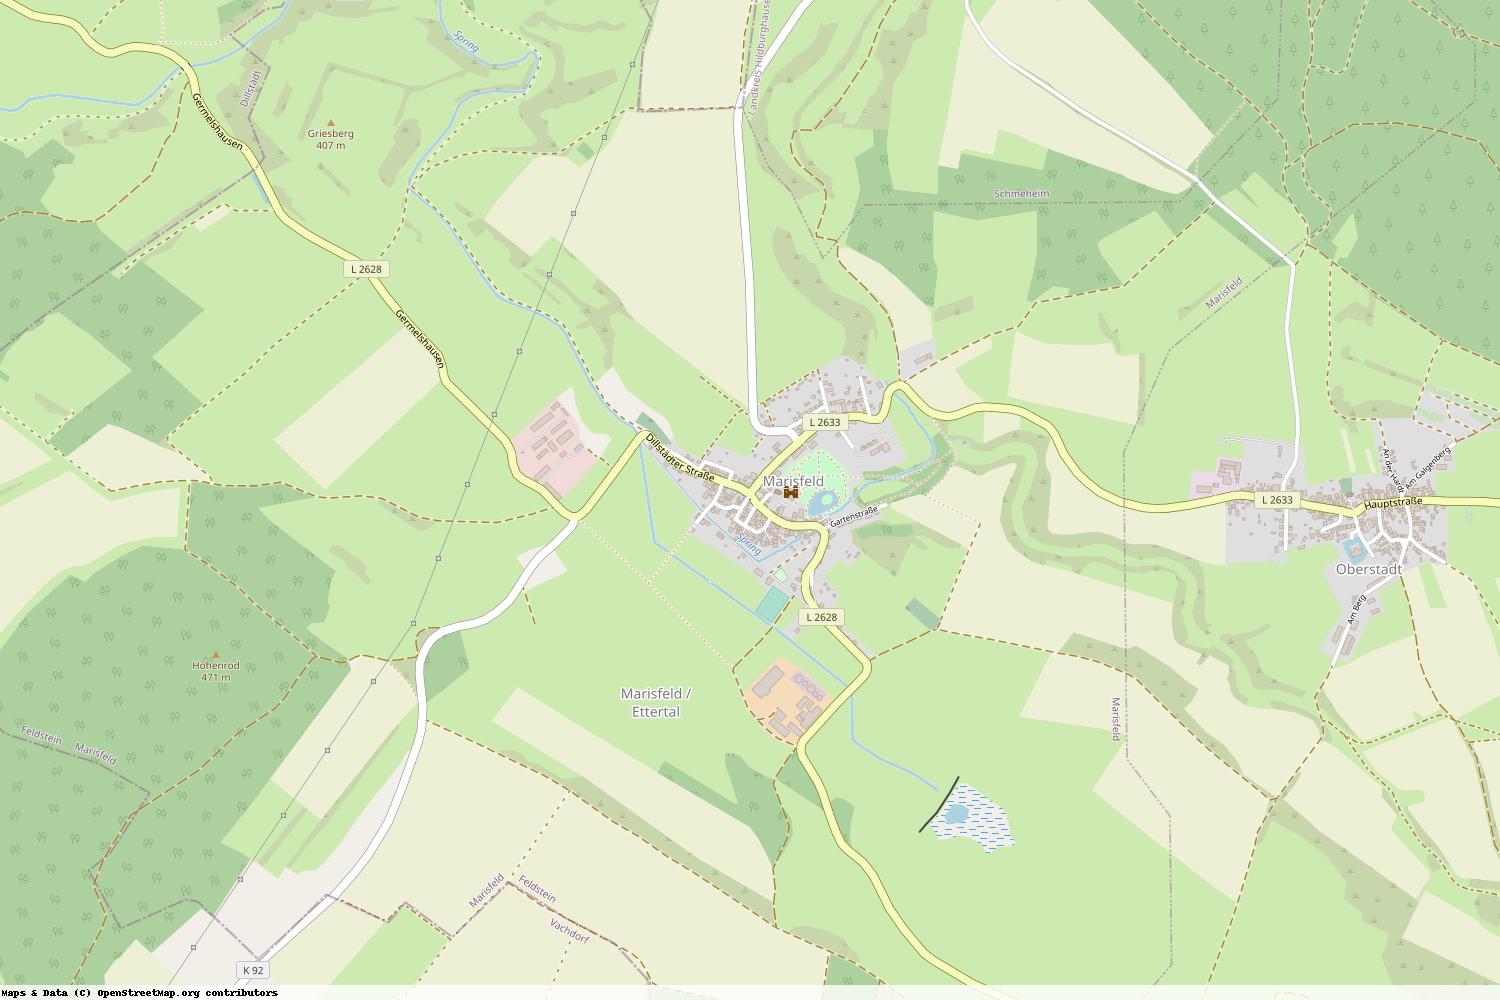 Ist gerade Stromausfall in Thüringen - Hildburghausen - Marisfeld?